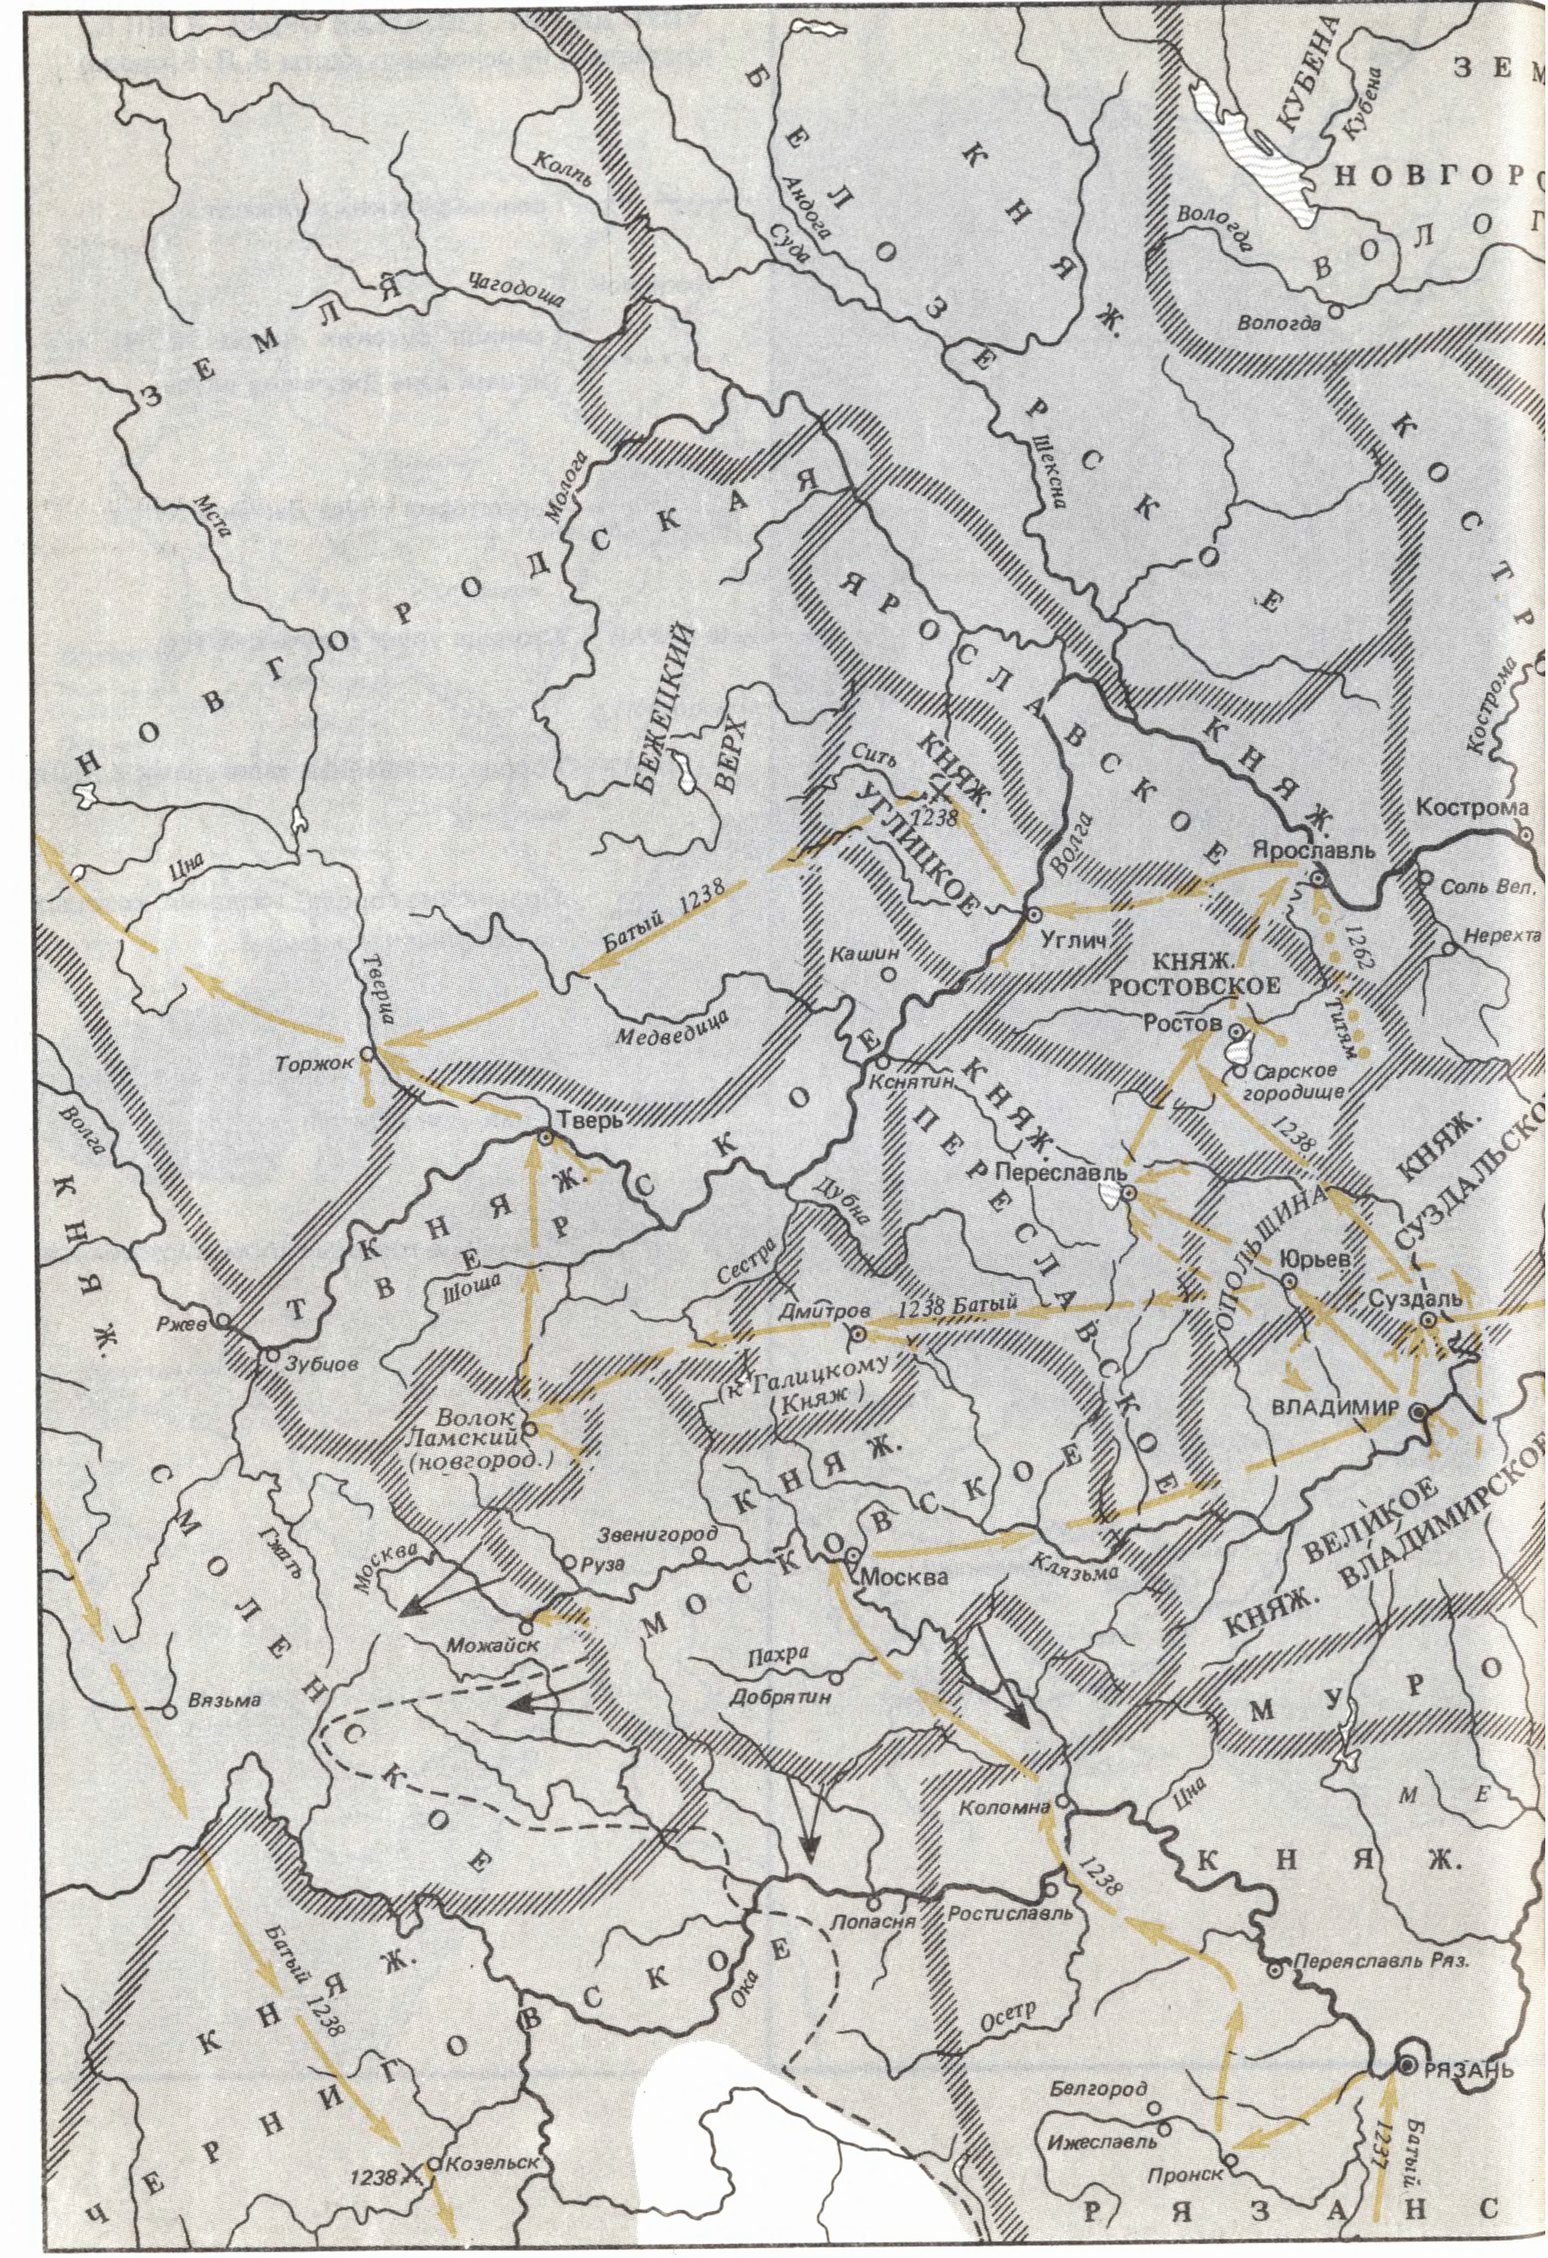 Северо-восточная Русь с 1200 г. до 1305 г. и монгольское завоевание (составлена на основании карты И.А. Голубцова)